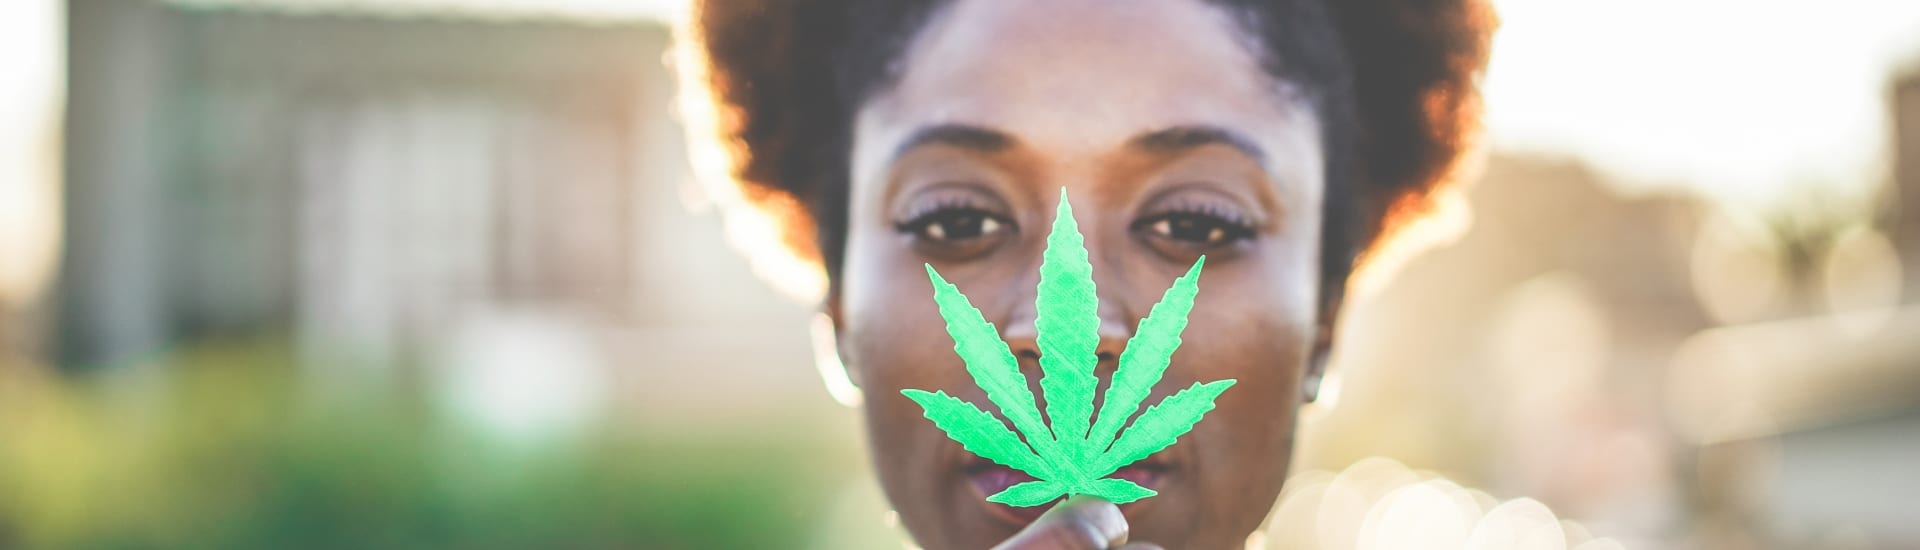 Ideas y mitos erróneos que se tienen sobre el cannabis y su uso